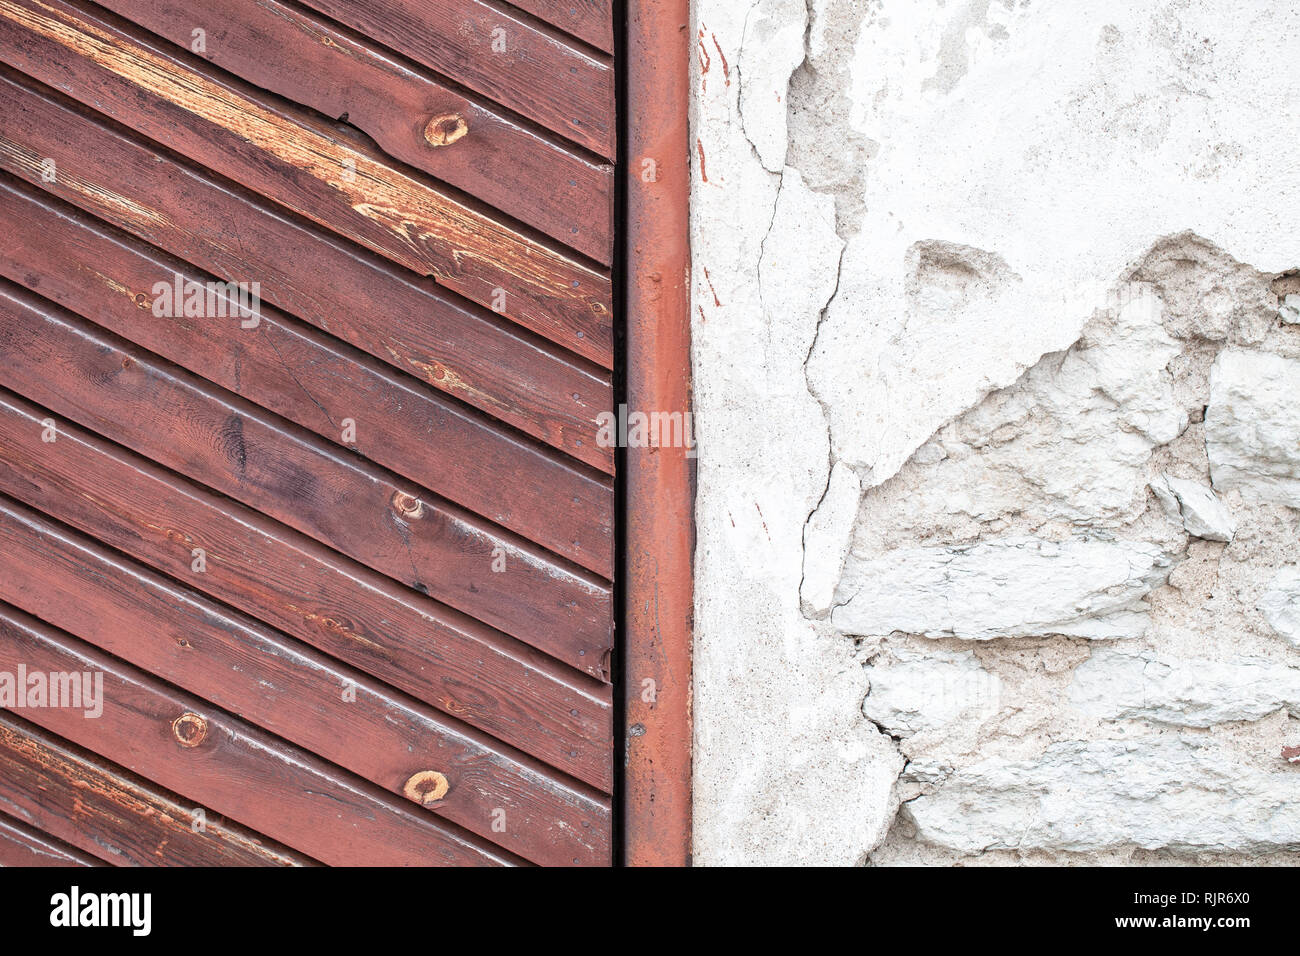 Merveilleuse combinaison de vieux bois et de surfaces en pierre Banque D'Images